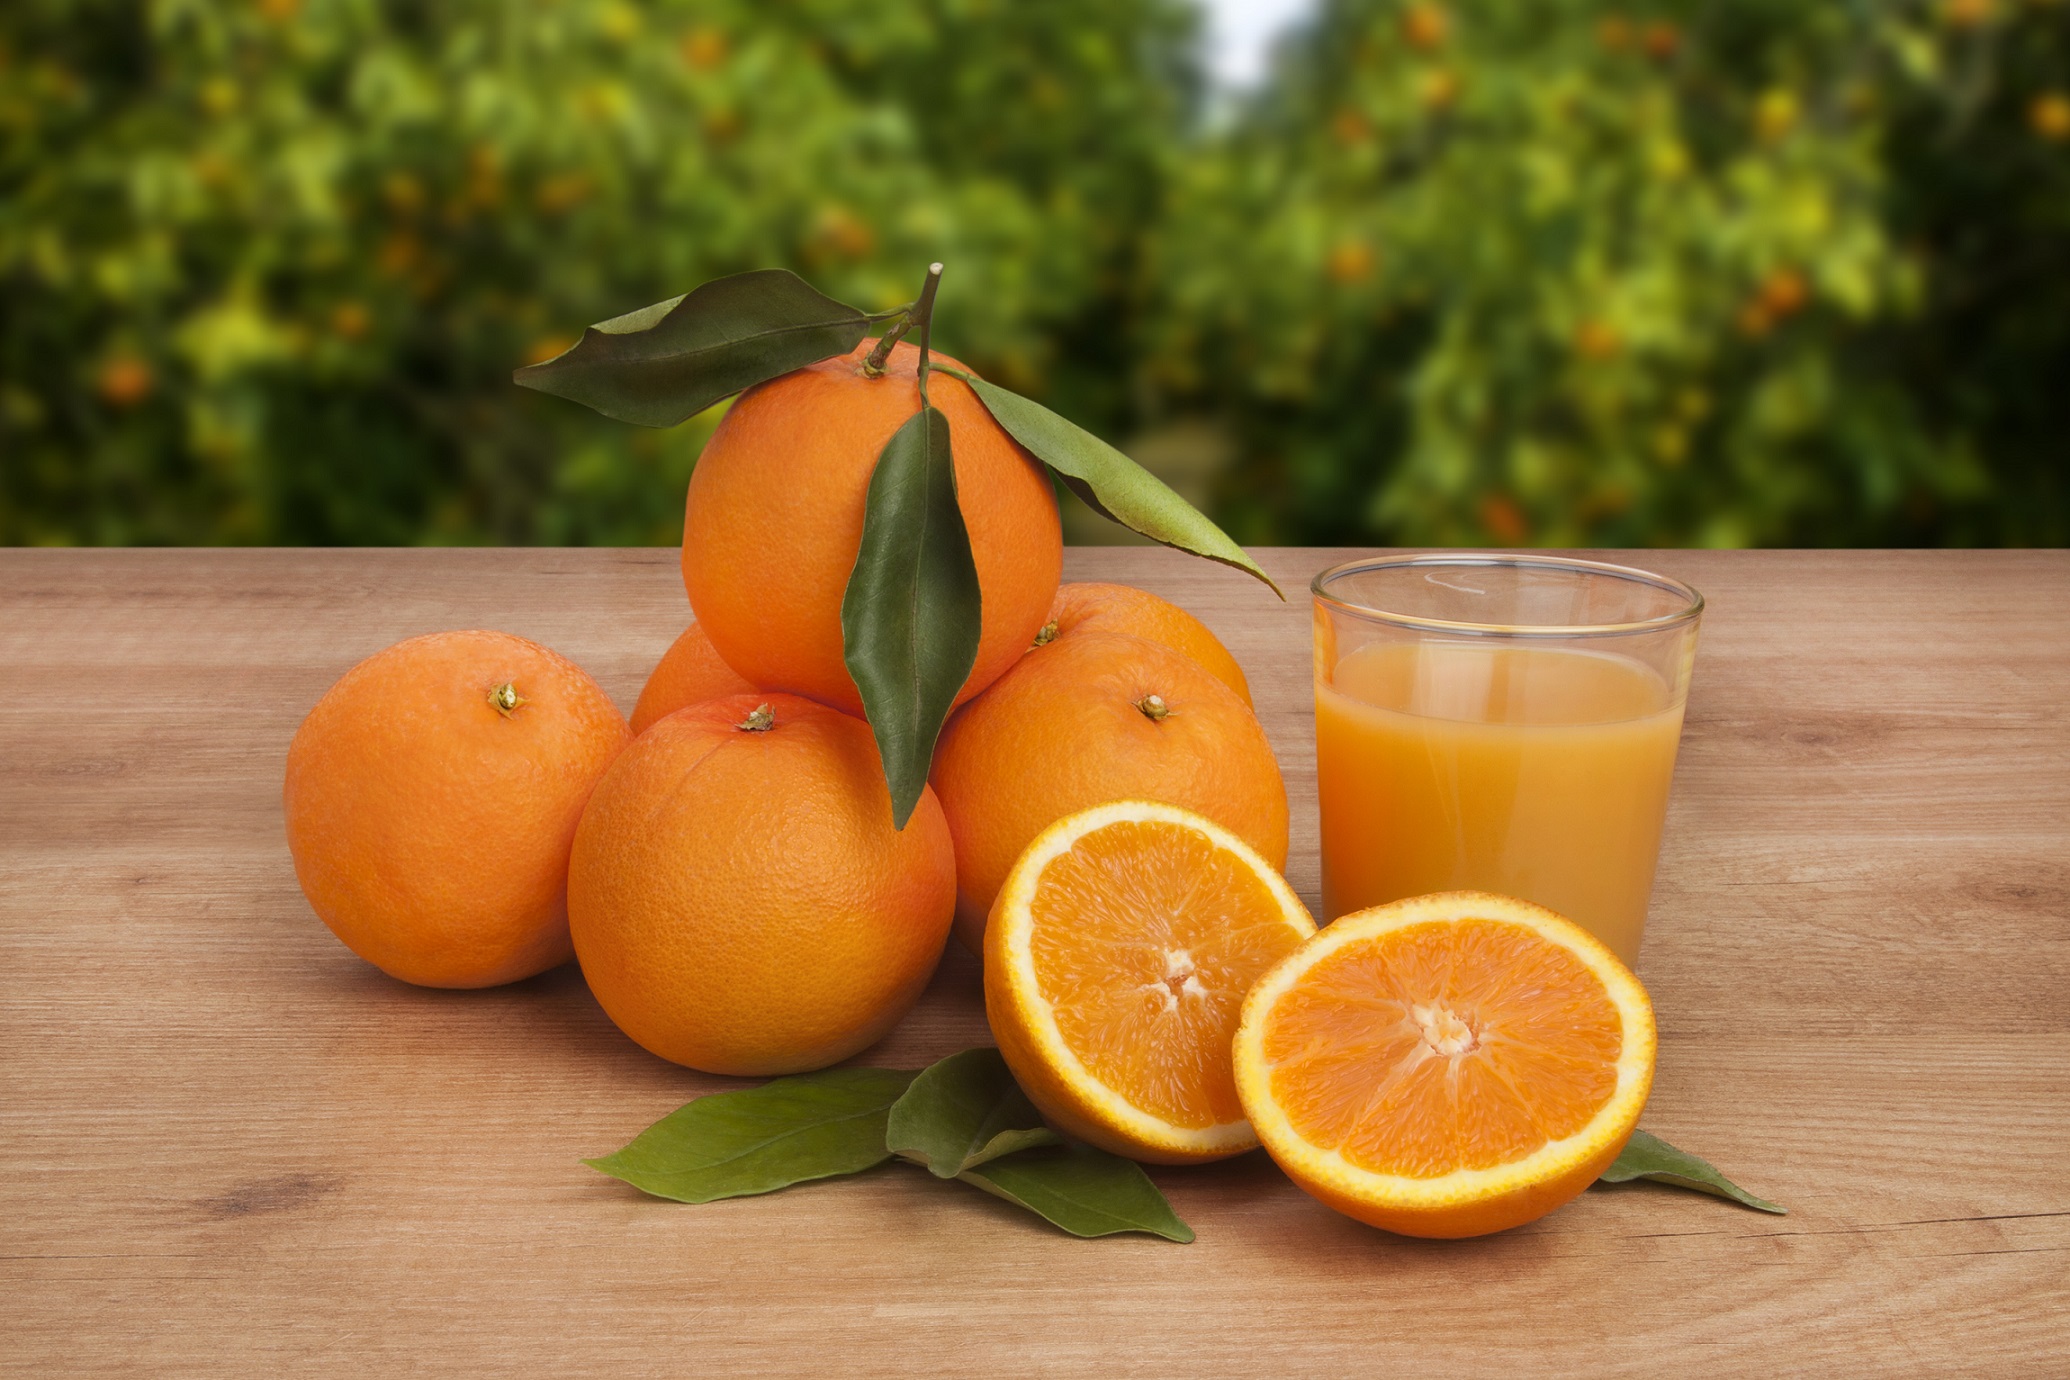 Orange: The Golden Fruit for Good Health